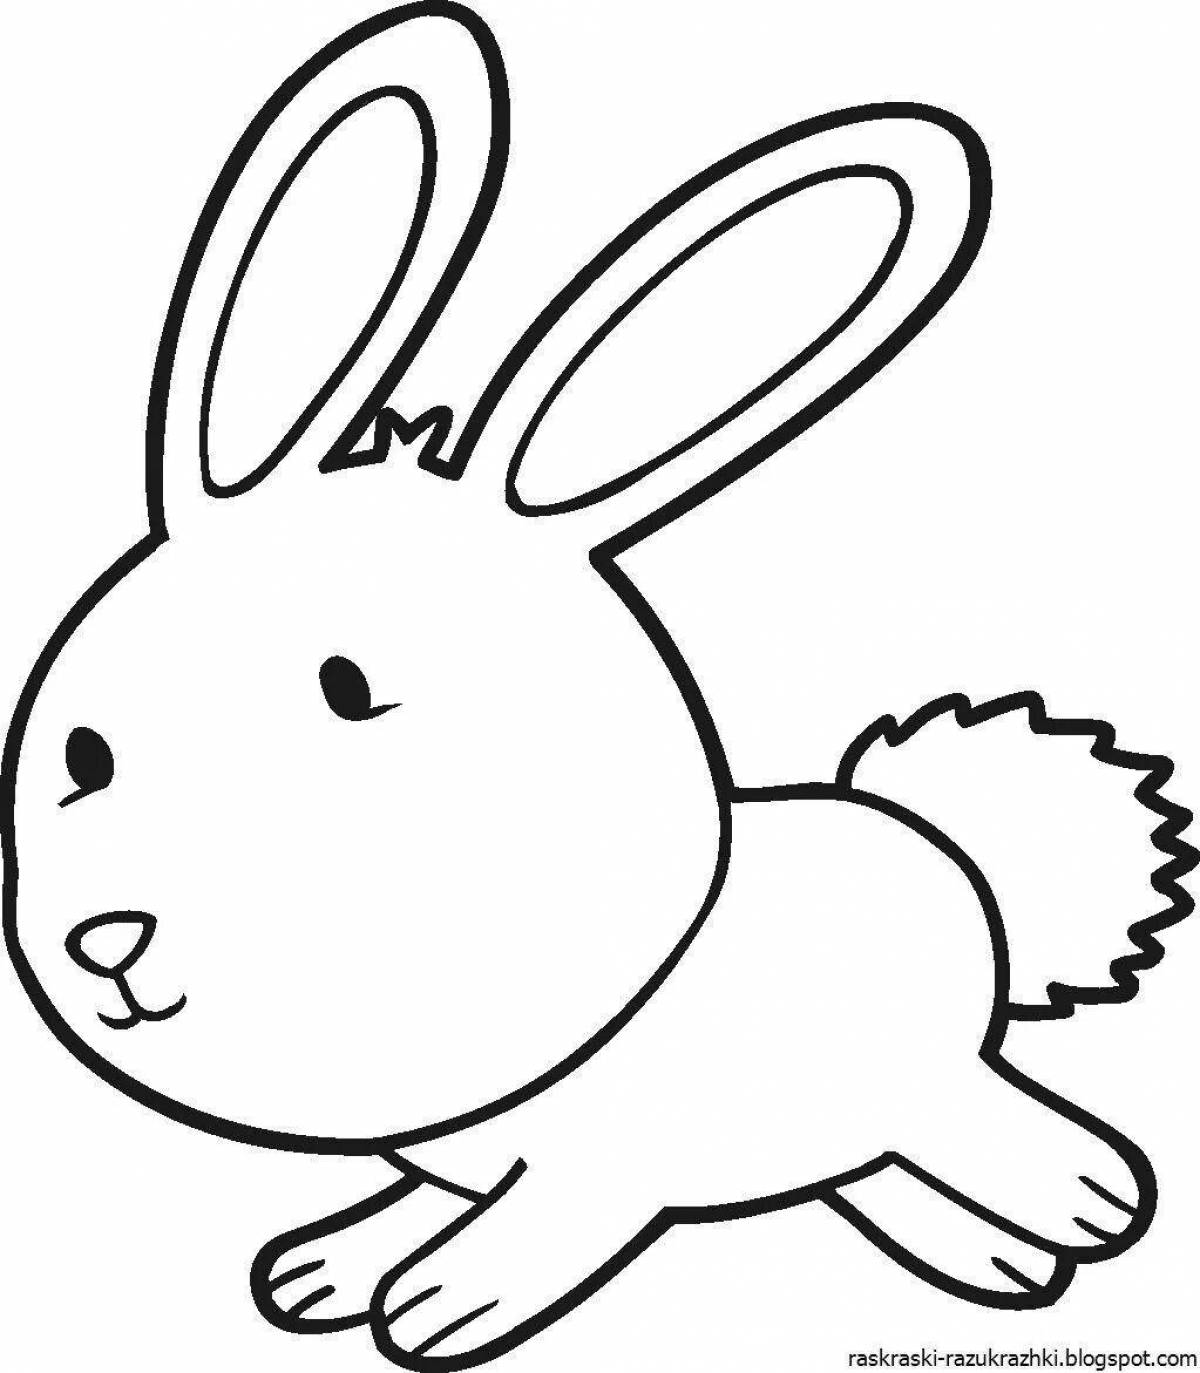 Веселая раскраска заяц для детей